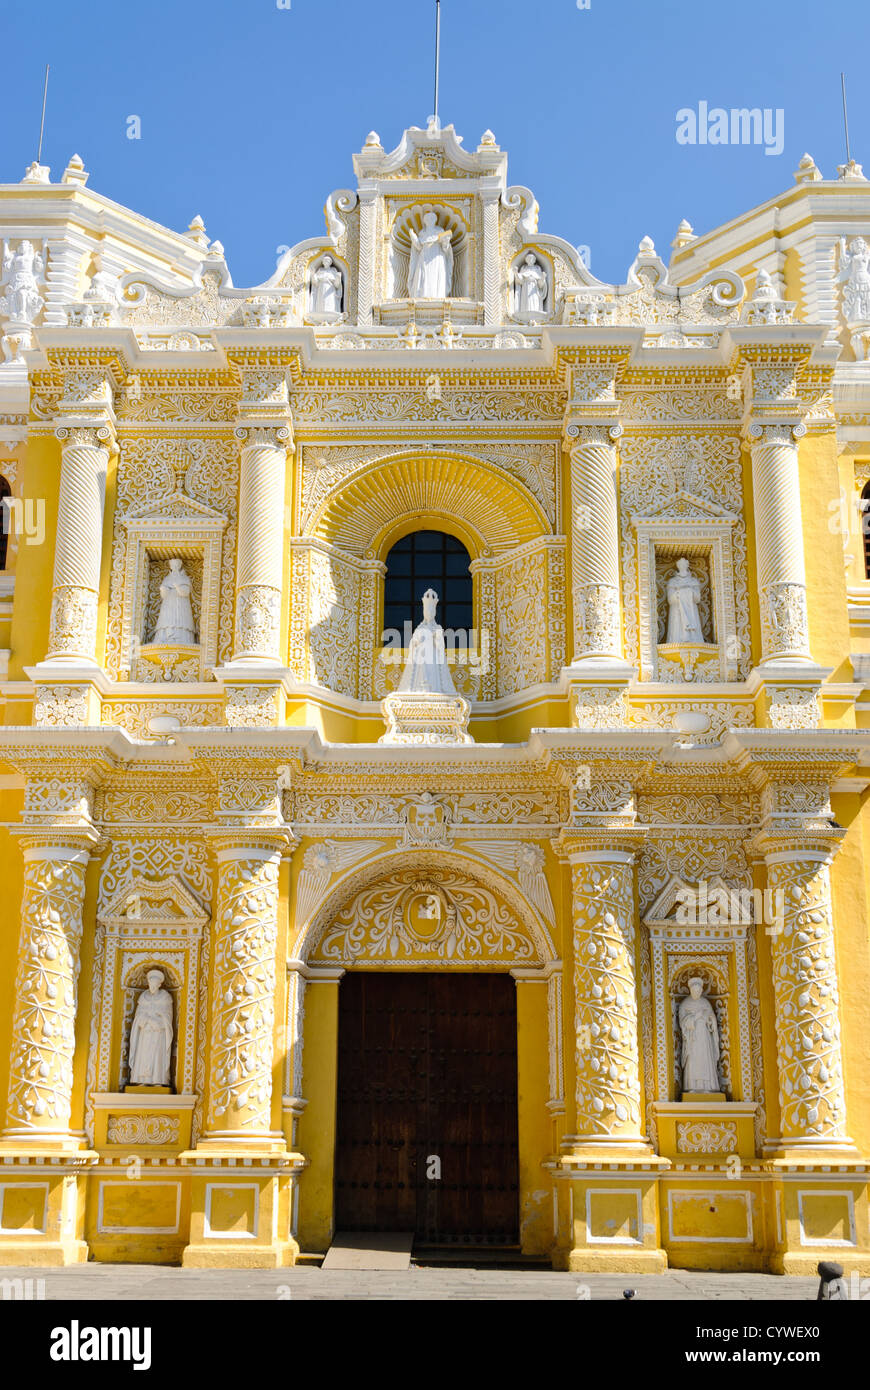 ANTIGUA, Guatemala - Main entrance of the distinctive and ornate yellow and  white exterior of the Iglesia y Convento de Nuestra Senora de la Merced in  downtown Antigua, Guatemala Stock Photo - Alamy